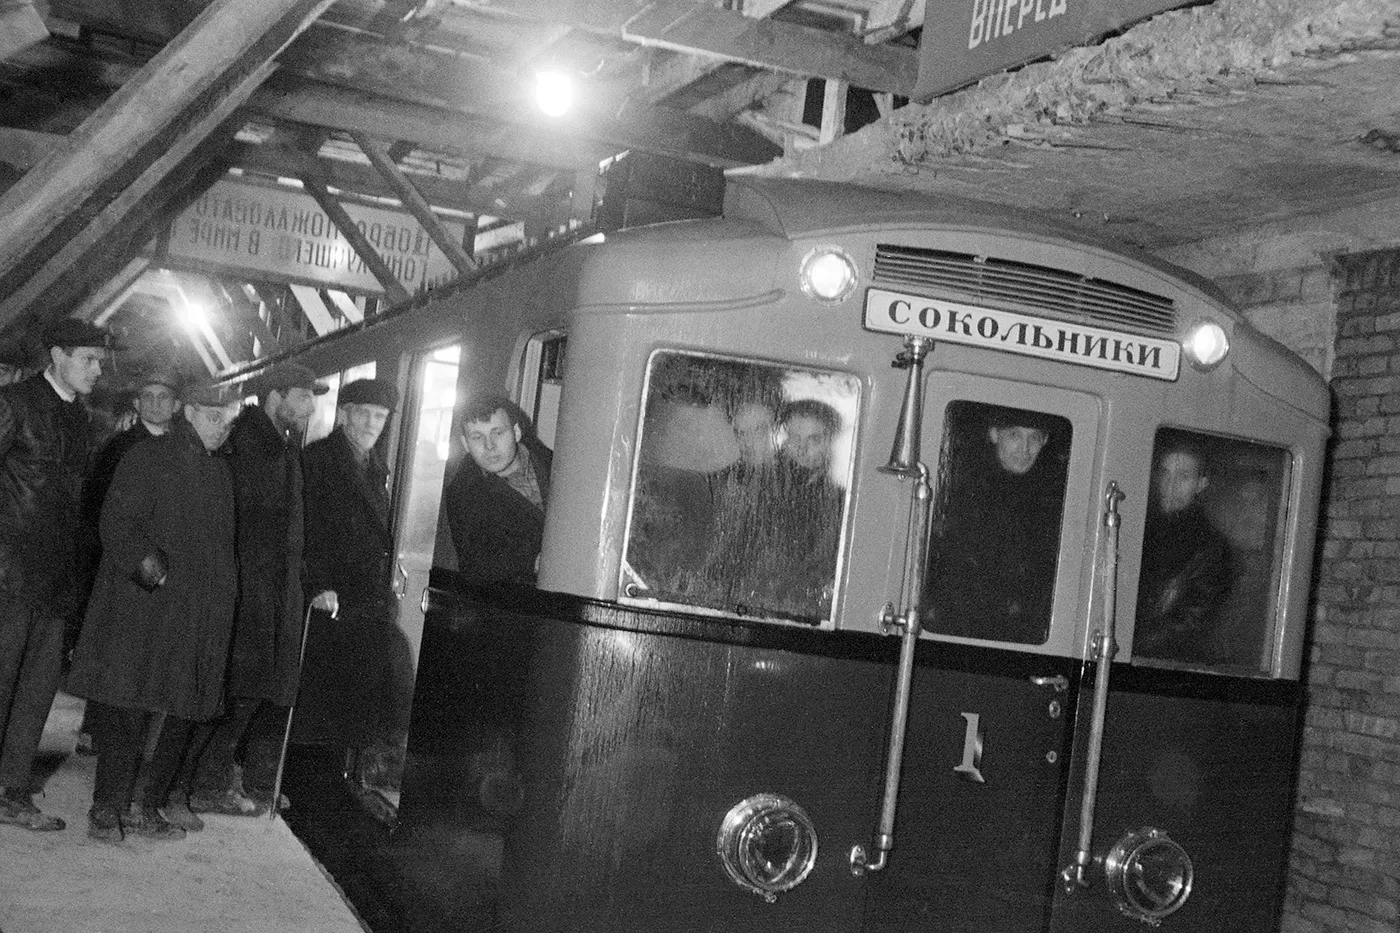 Открытие Московского метрополитена 1935